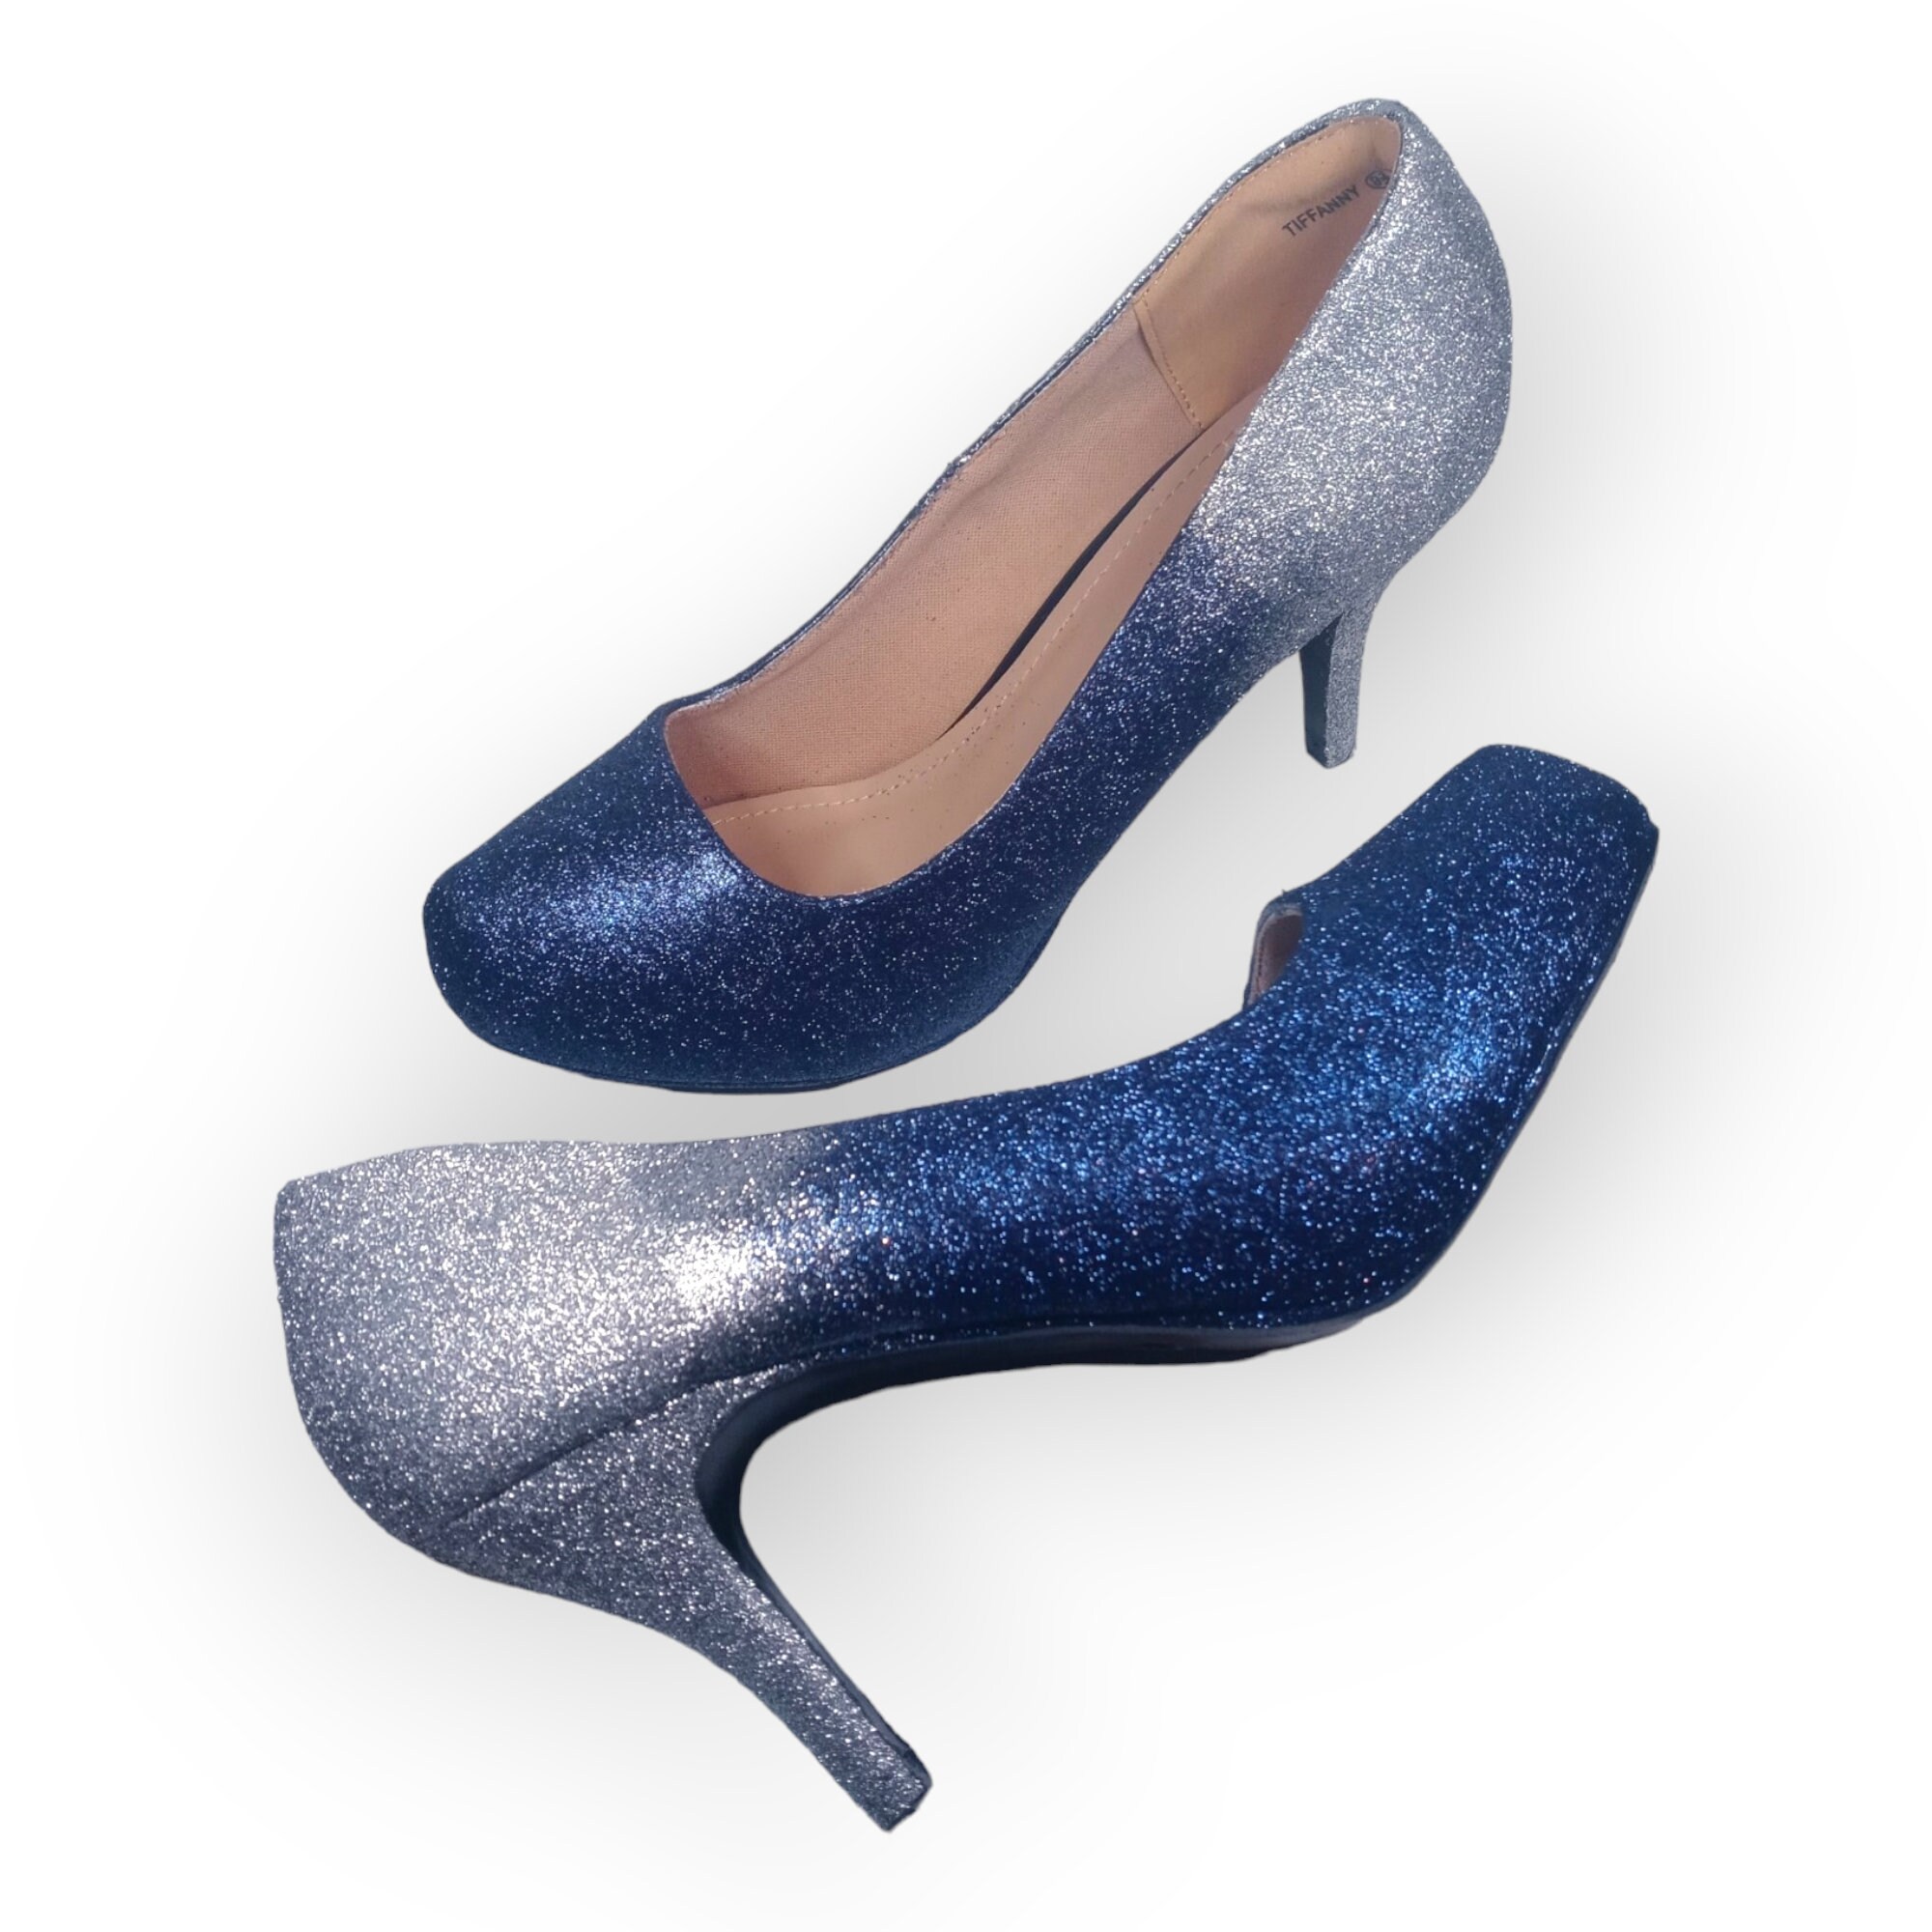 Navy Rock Glitter Block Heel Sandals with Satin Bow | Block heels sandal,  Sandals heels, Heels